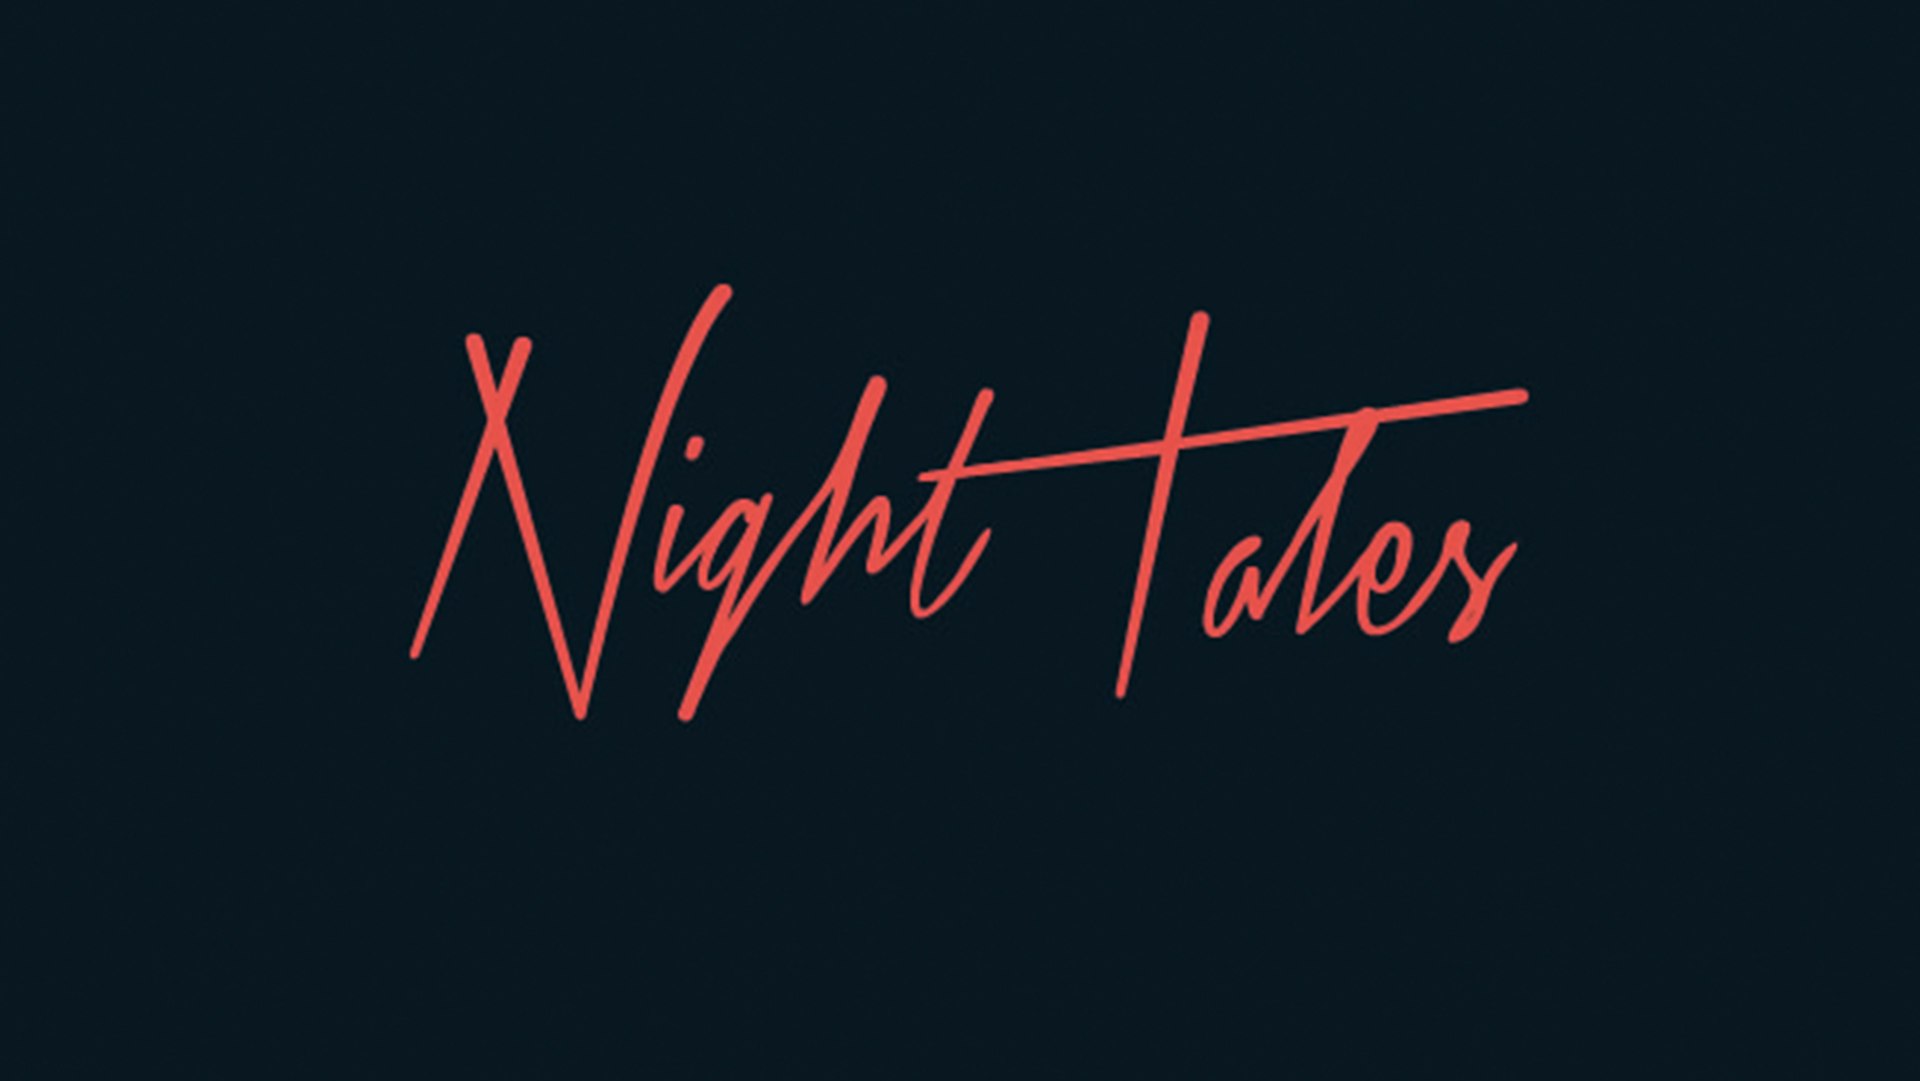 Night Tales